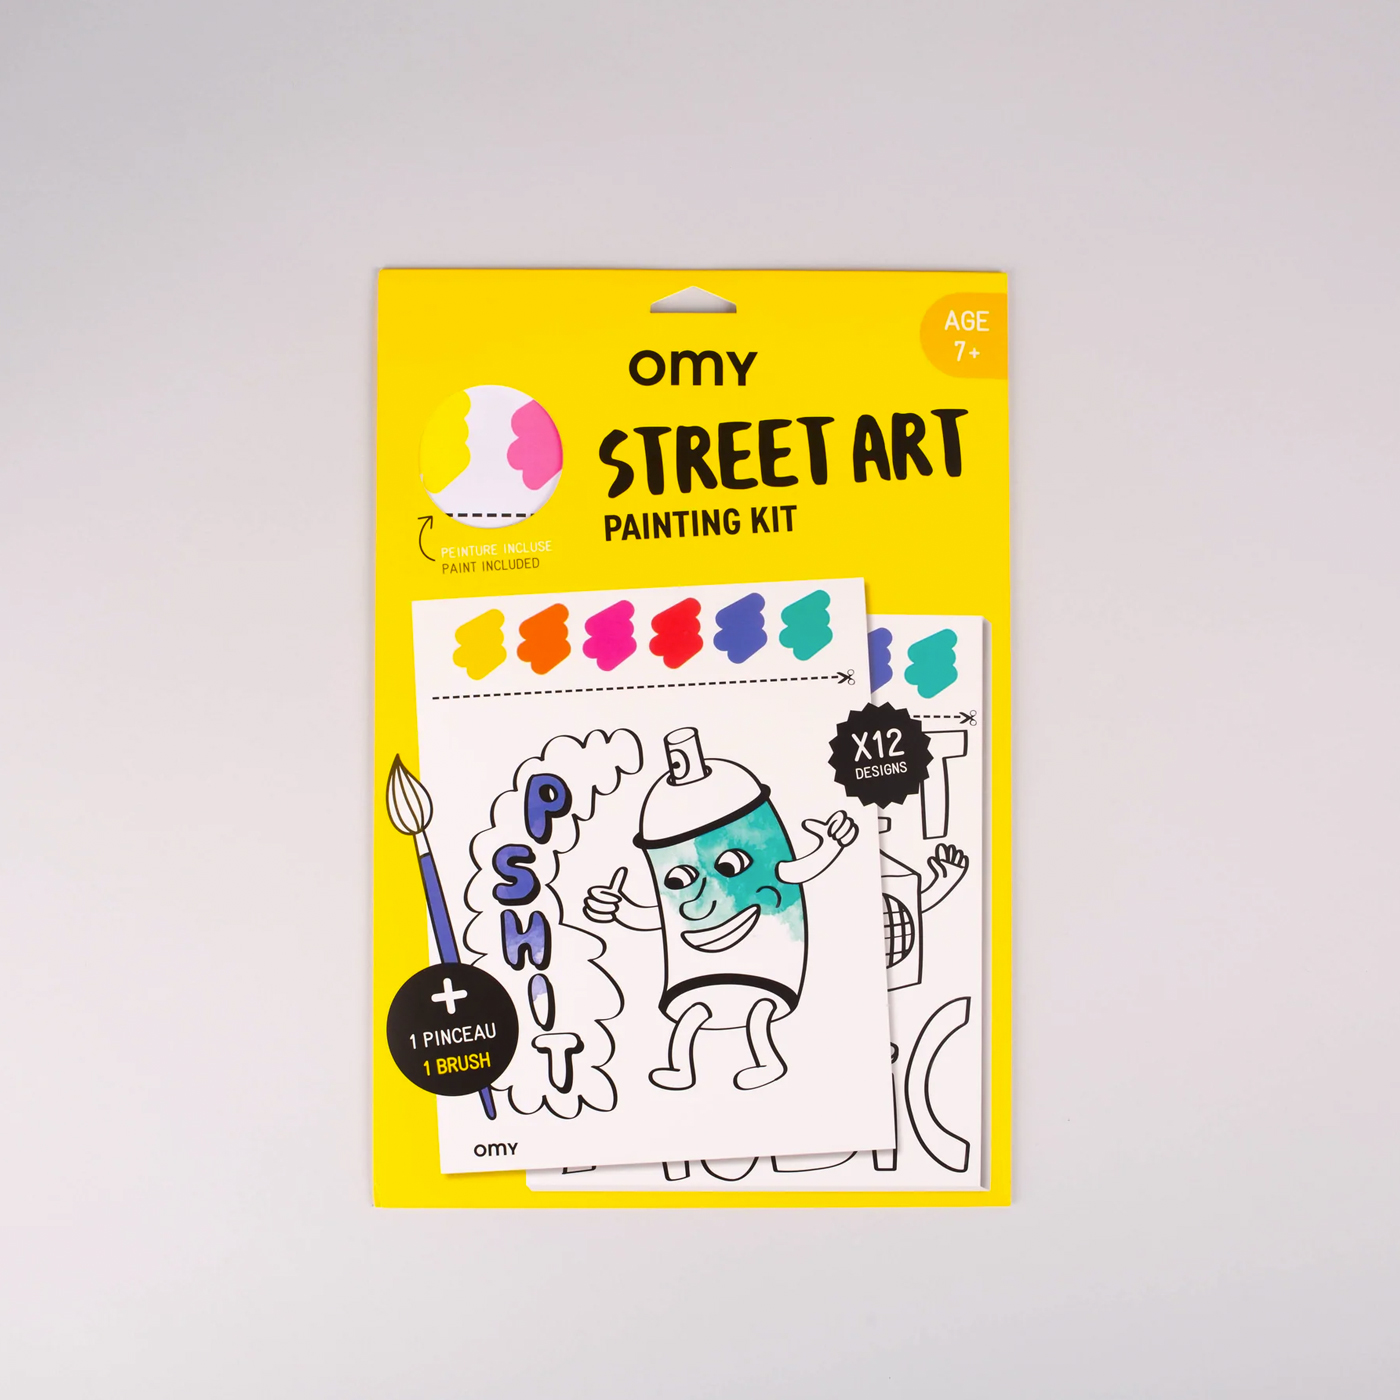 OMY Omy Painting Kit  | Street Art